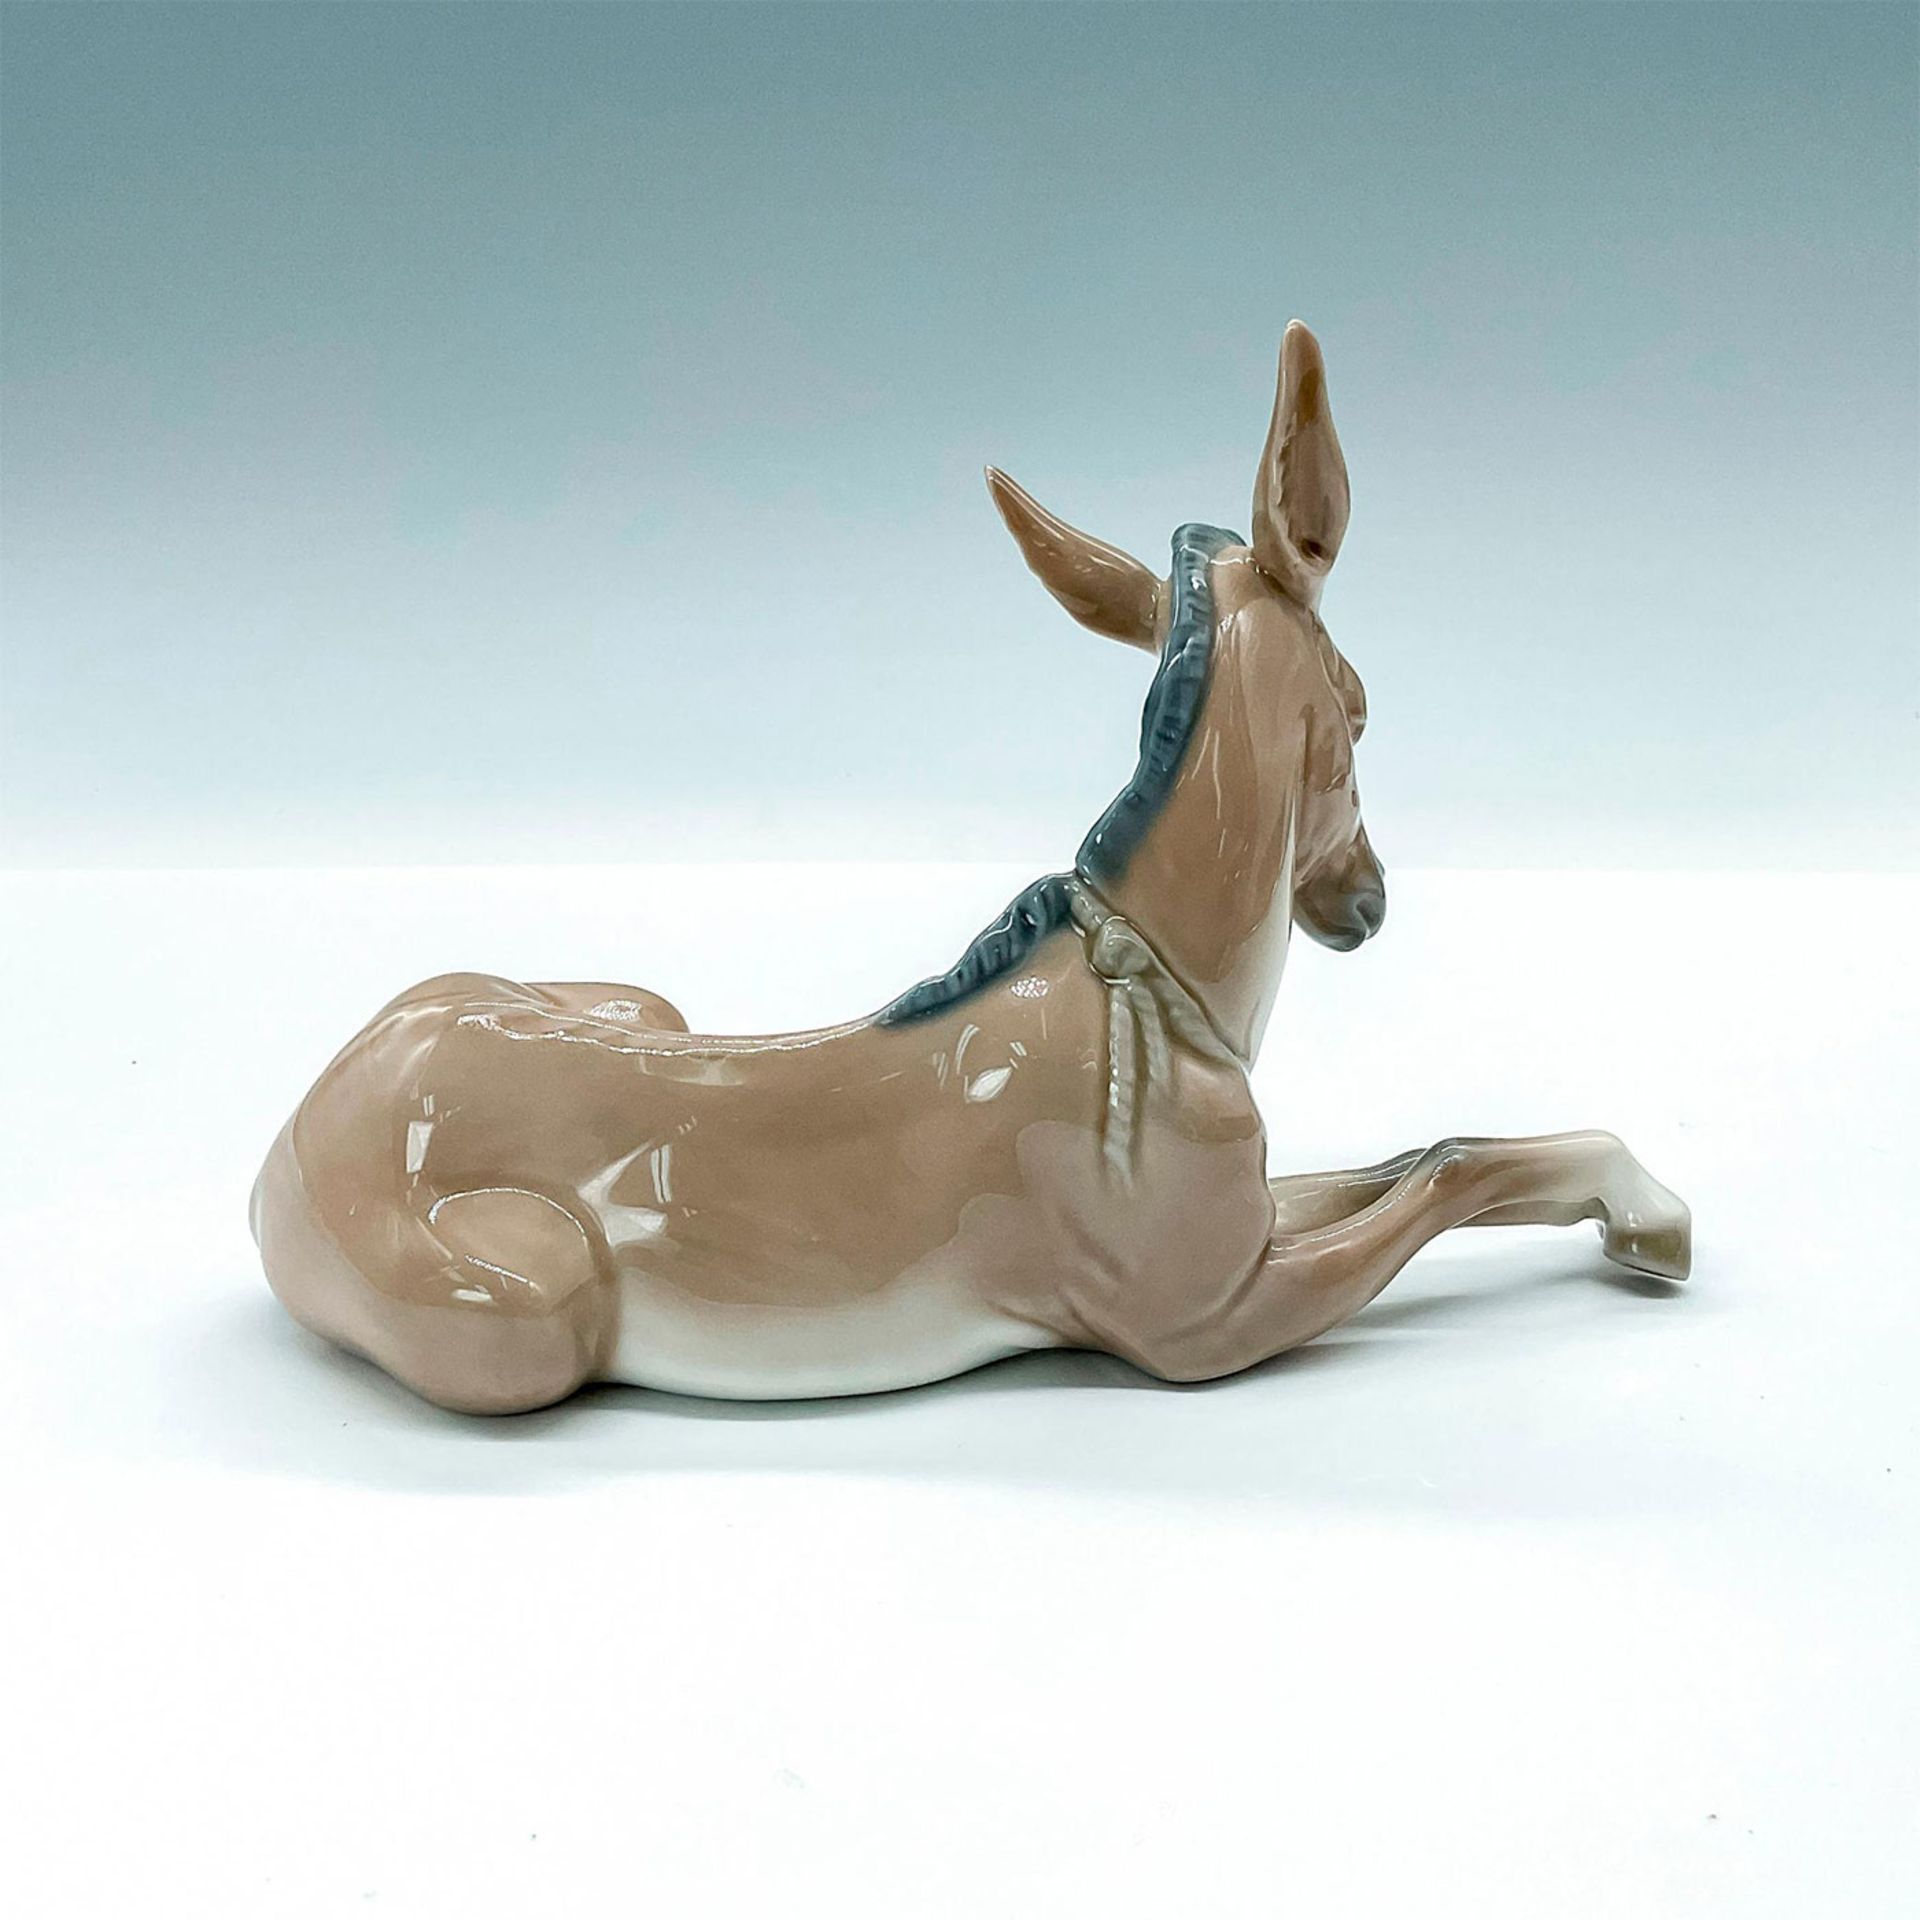 Donkey 1004679 - Lladro Porcelain Figurine - Image 2 of 3